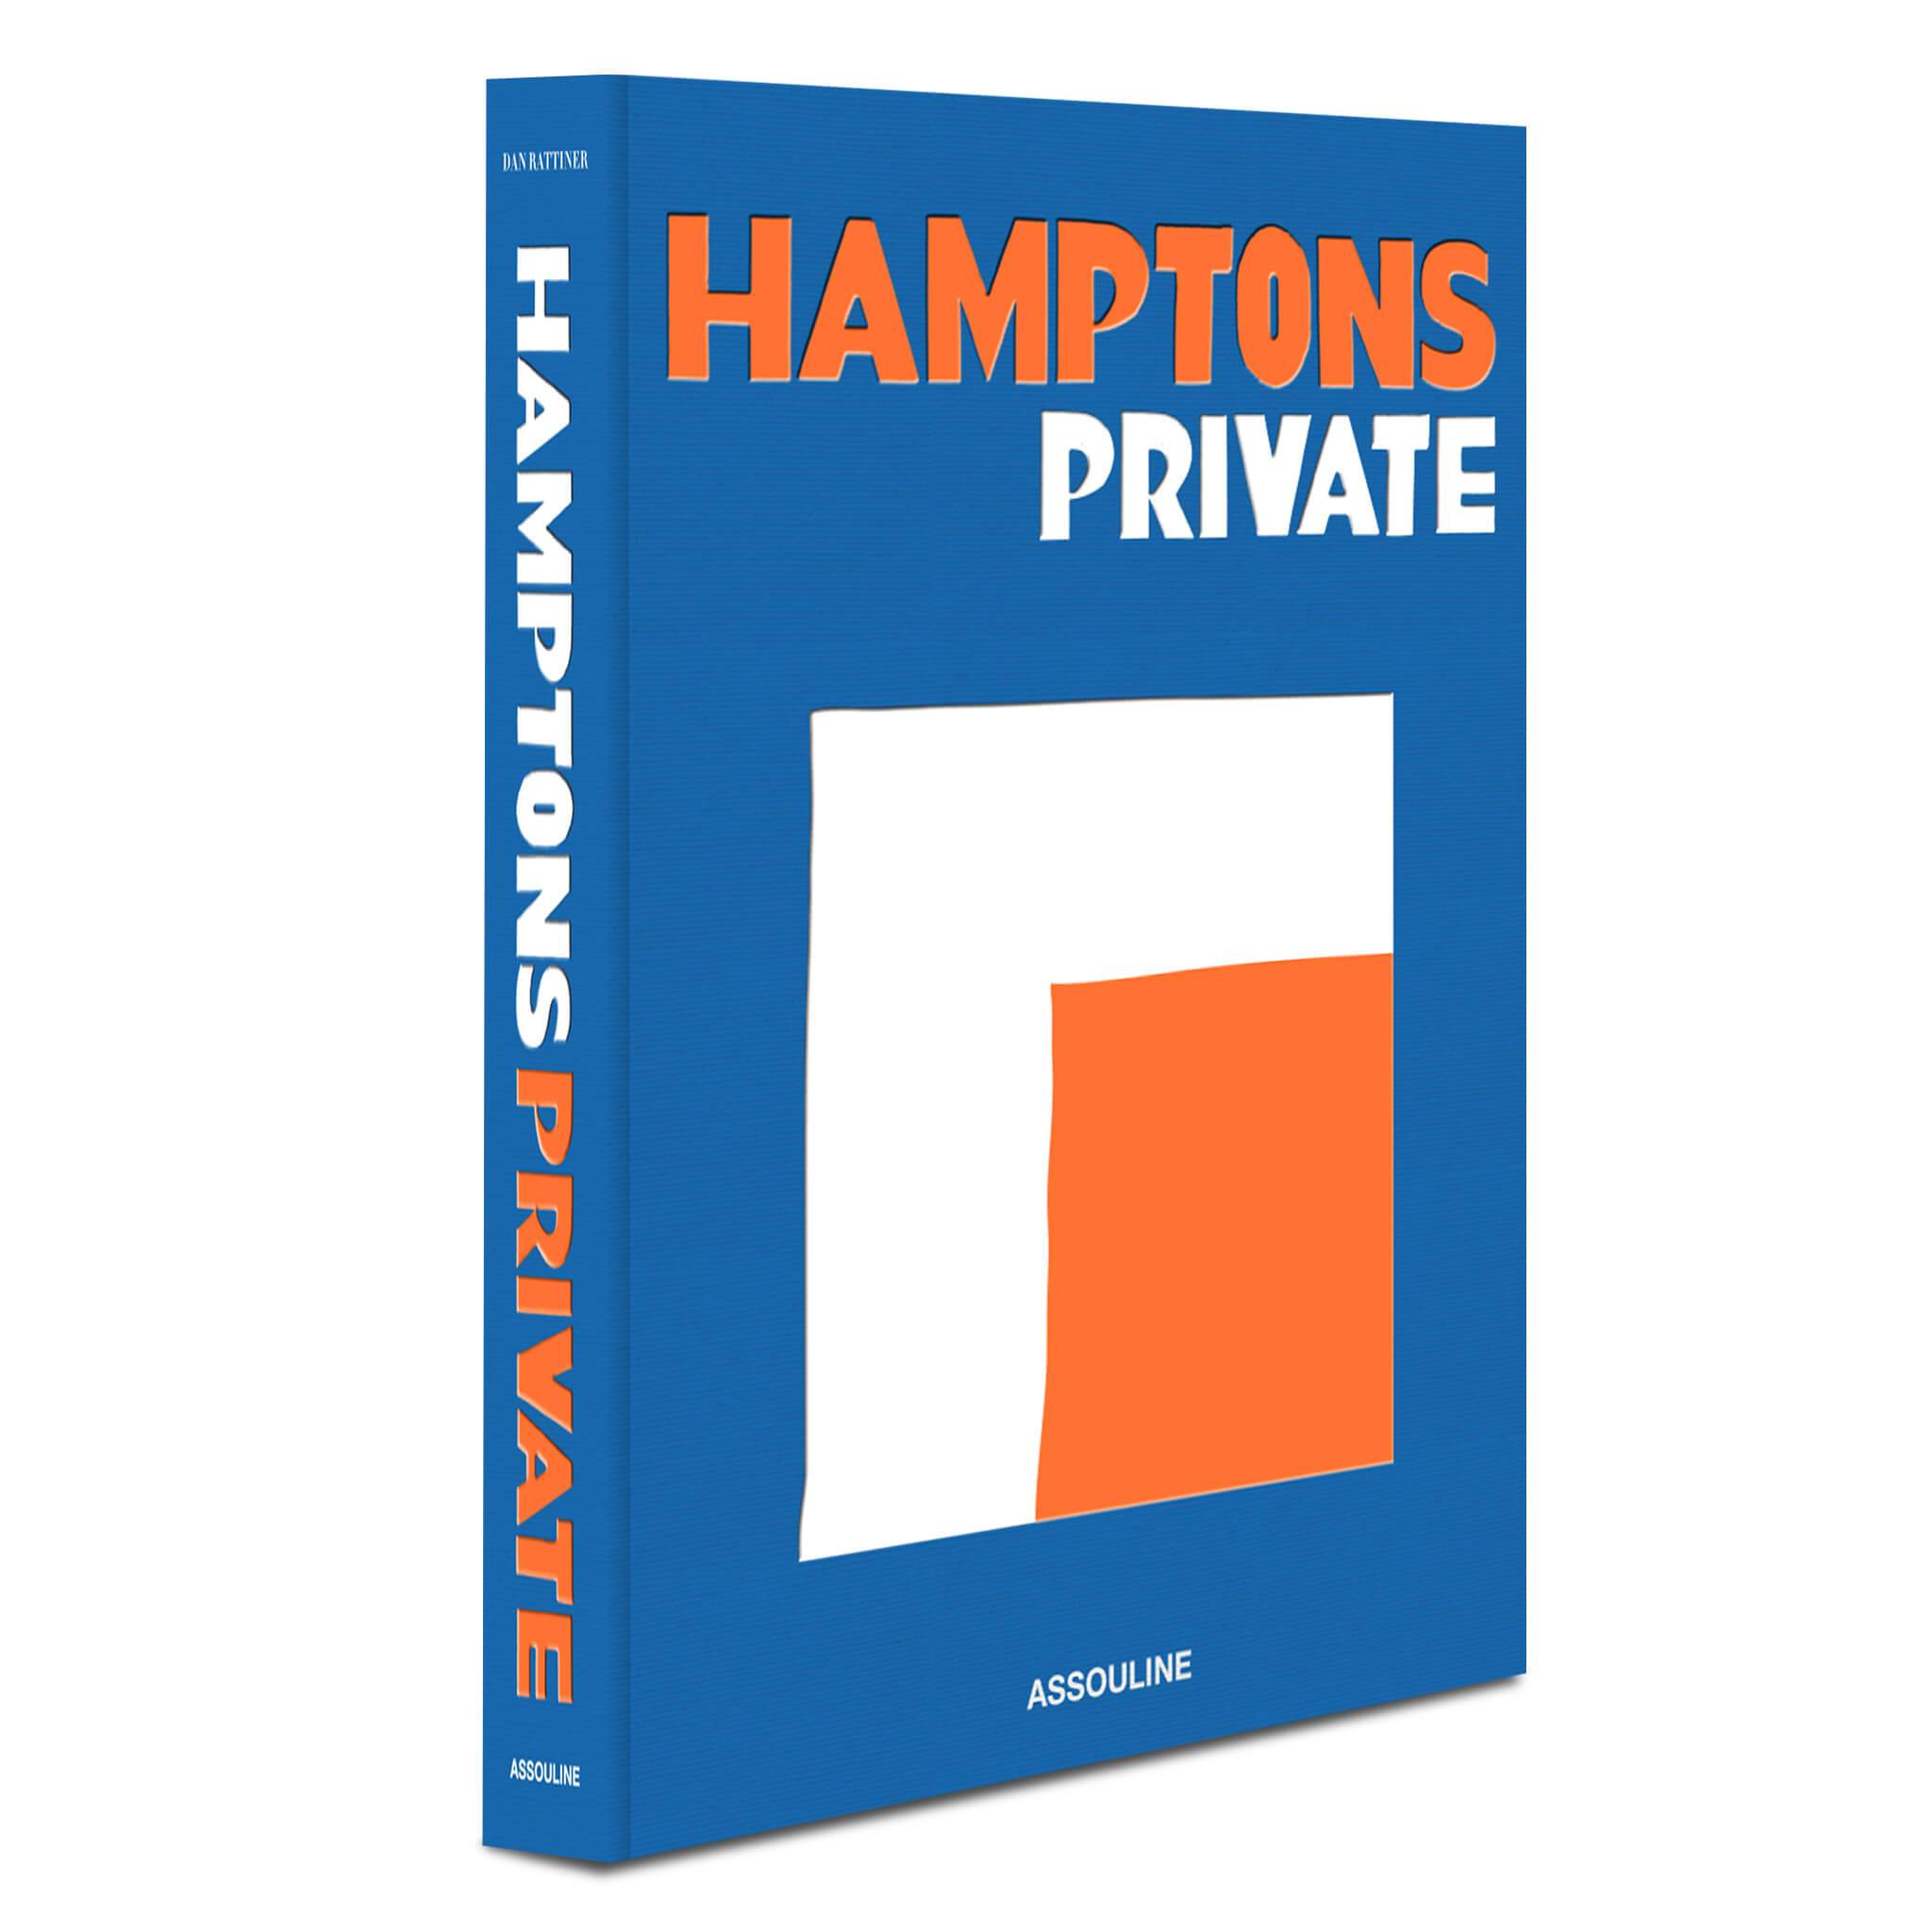 3D Hamptons Front Cover 34c824c7 3296 4fab bee7 67fb95c22945